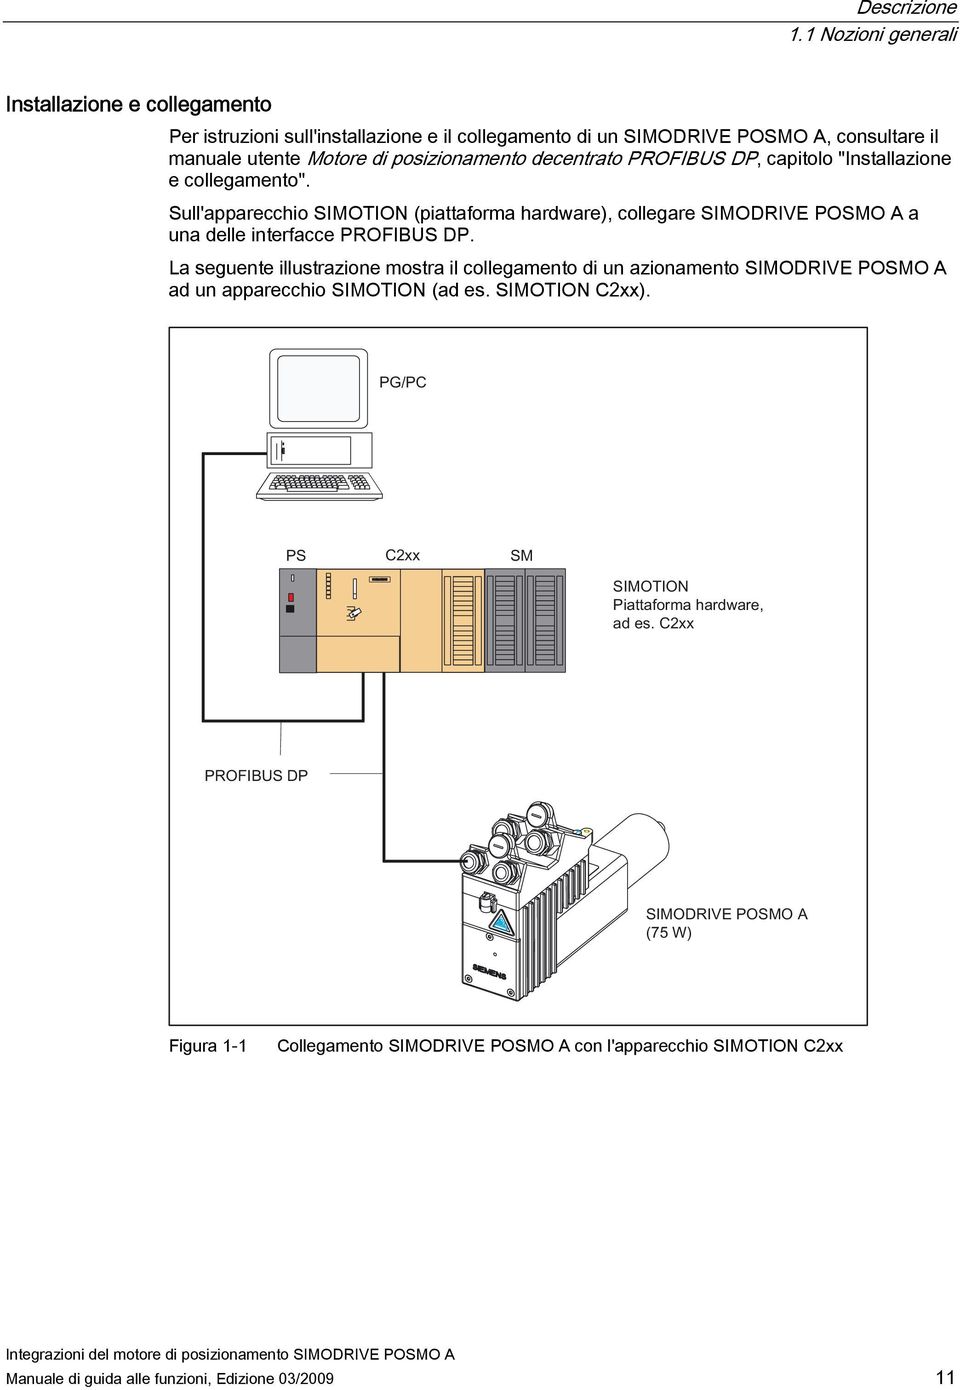 Motore di posizionamento decentrato PROFIBUS DP, capitolo "Installazione e collegamento".